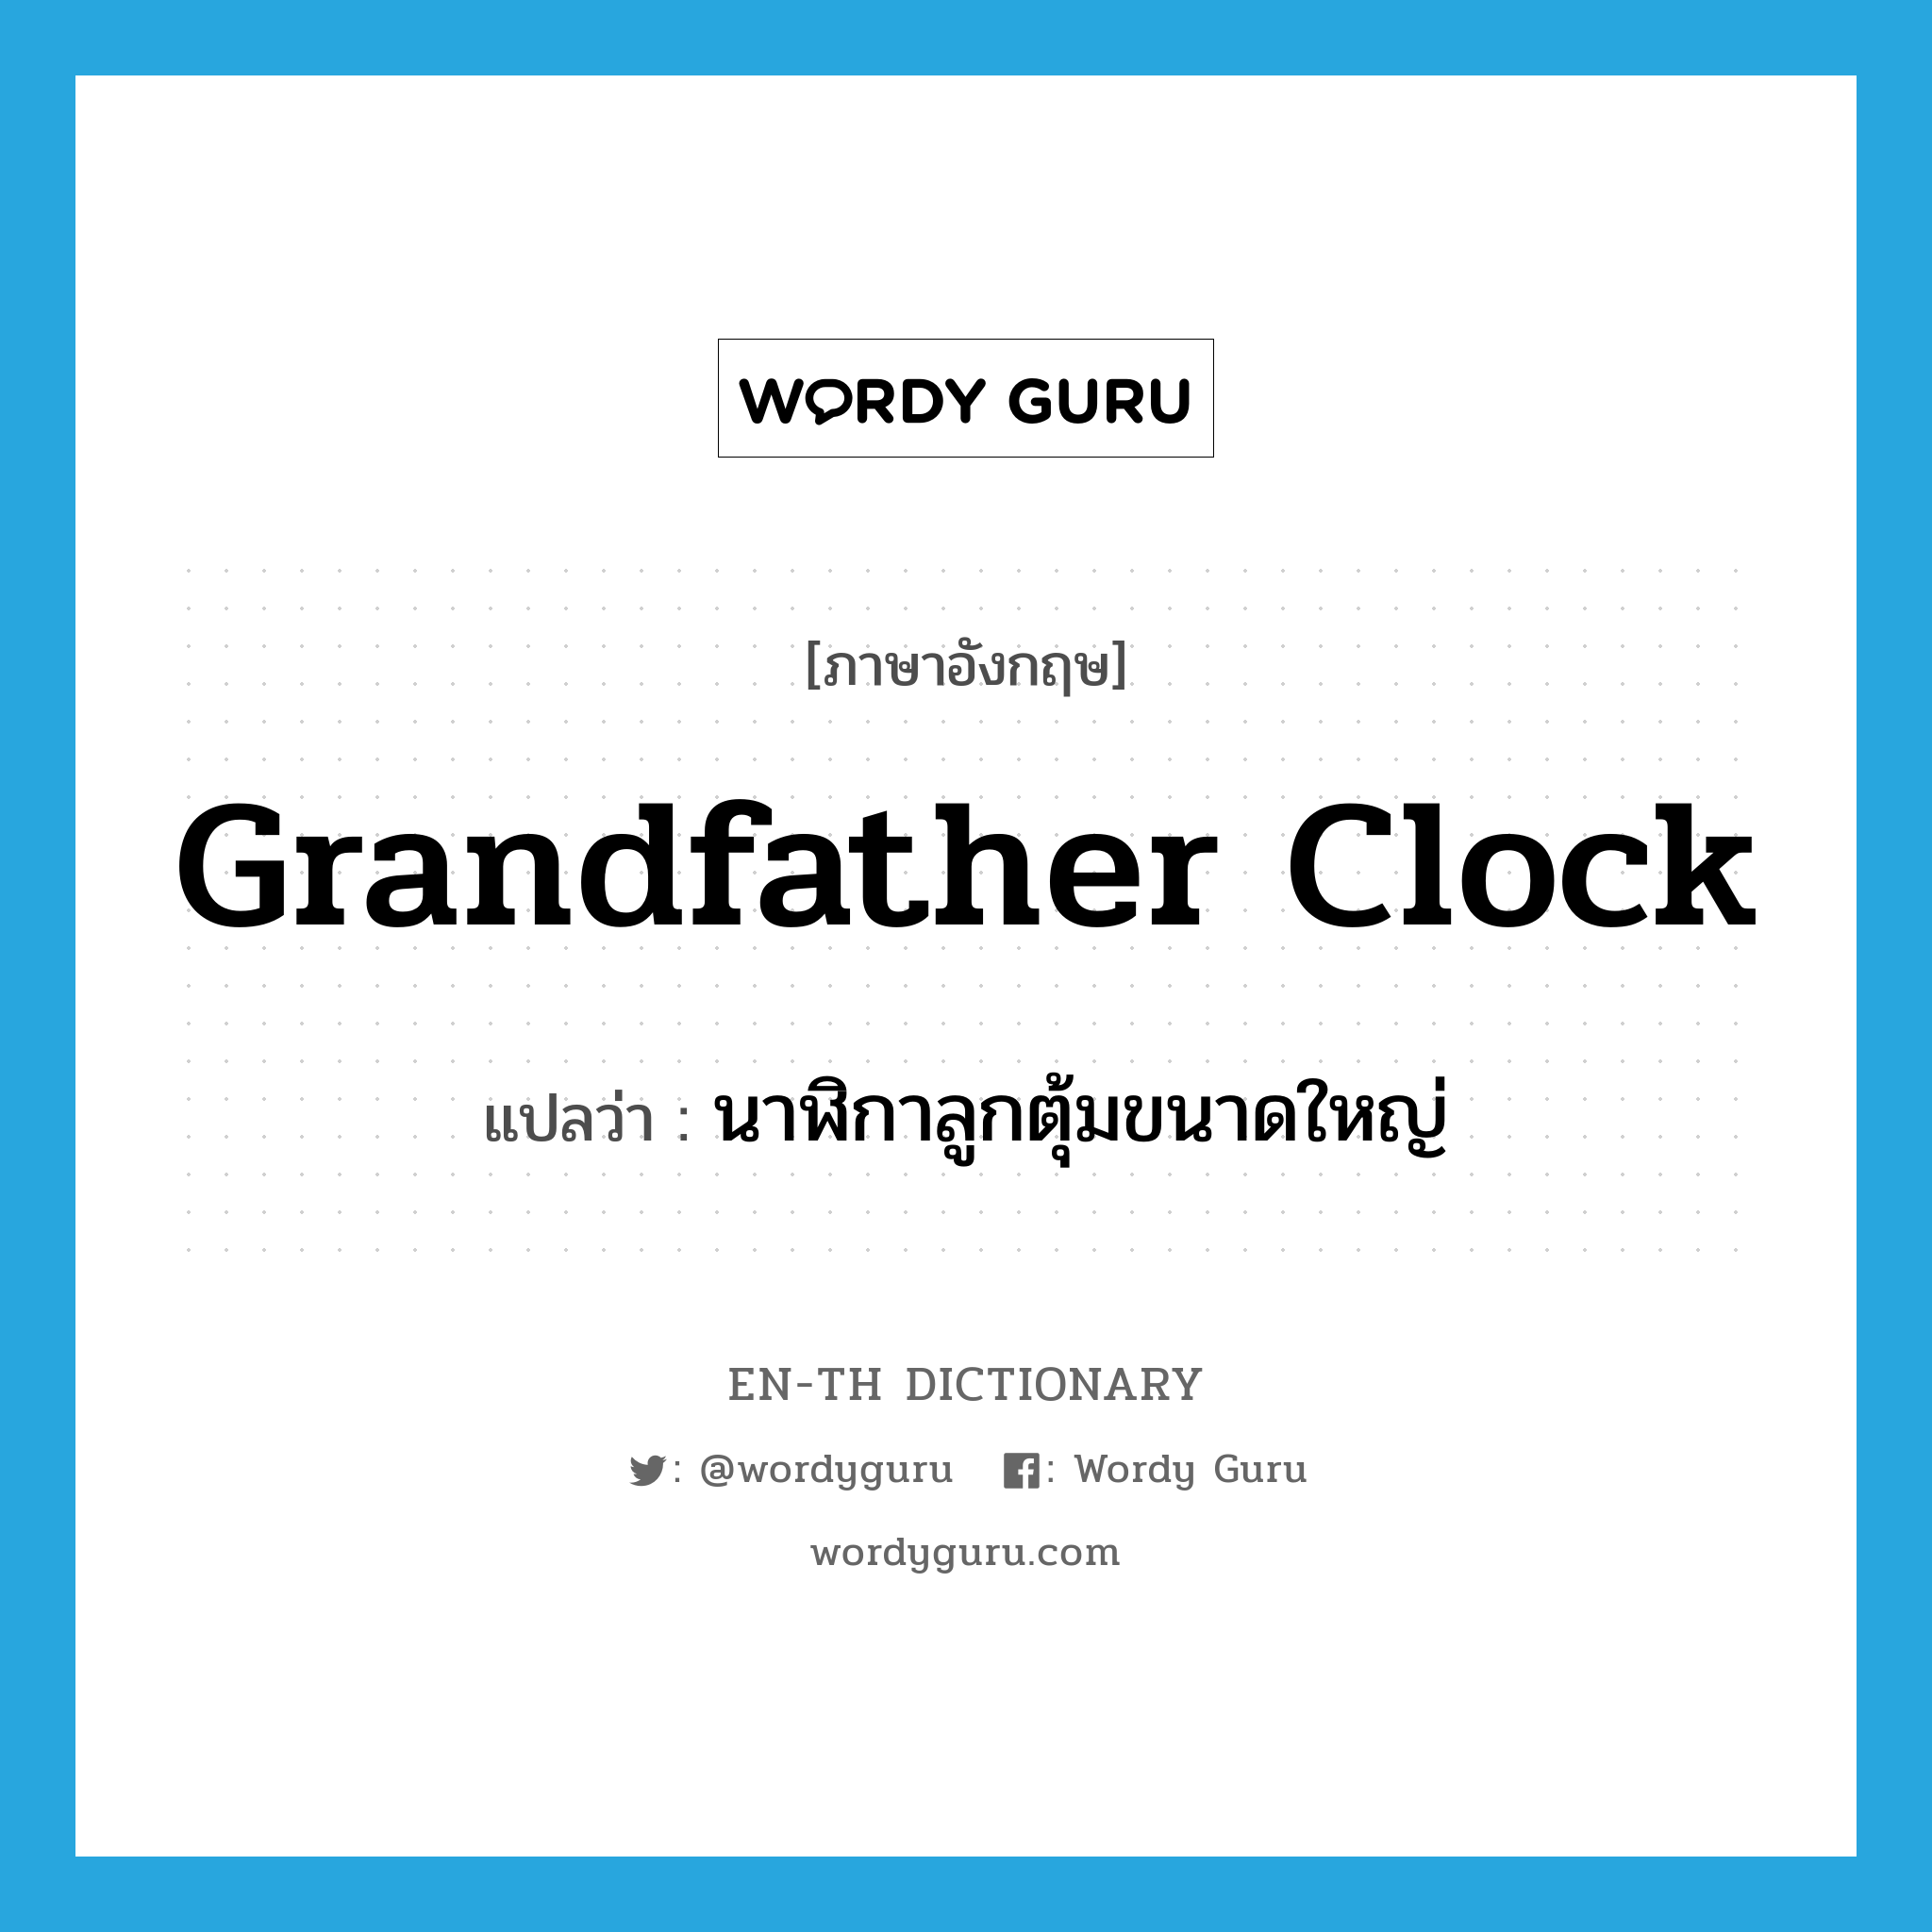 นาฬิกาลูกตุ้มขนาดใหญ่ ภาษาอังกฤษ?, คำศัพท์ภาษาอังกฤษ นาฬิกาลูกตุ้มขนาดใหญ่ แปลว่า grandfather clock ประเภท N หมวด N